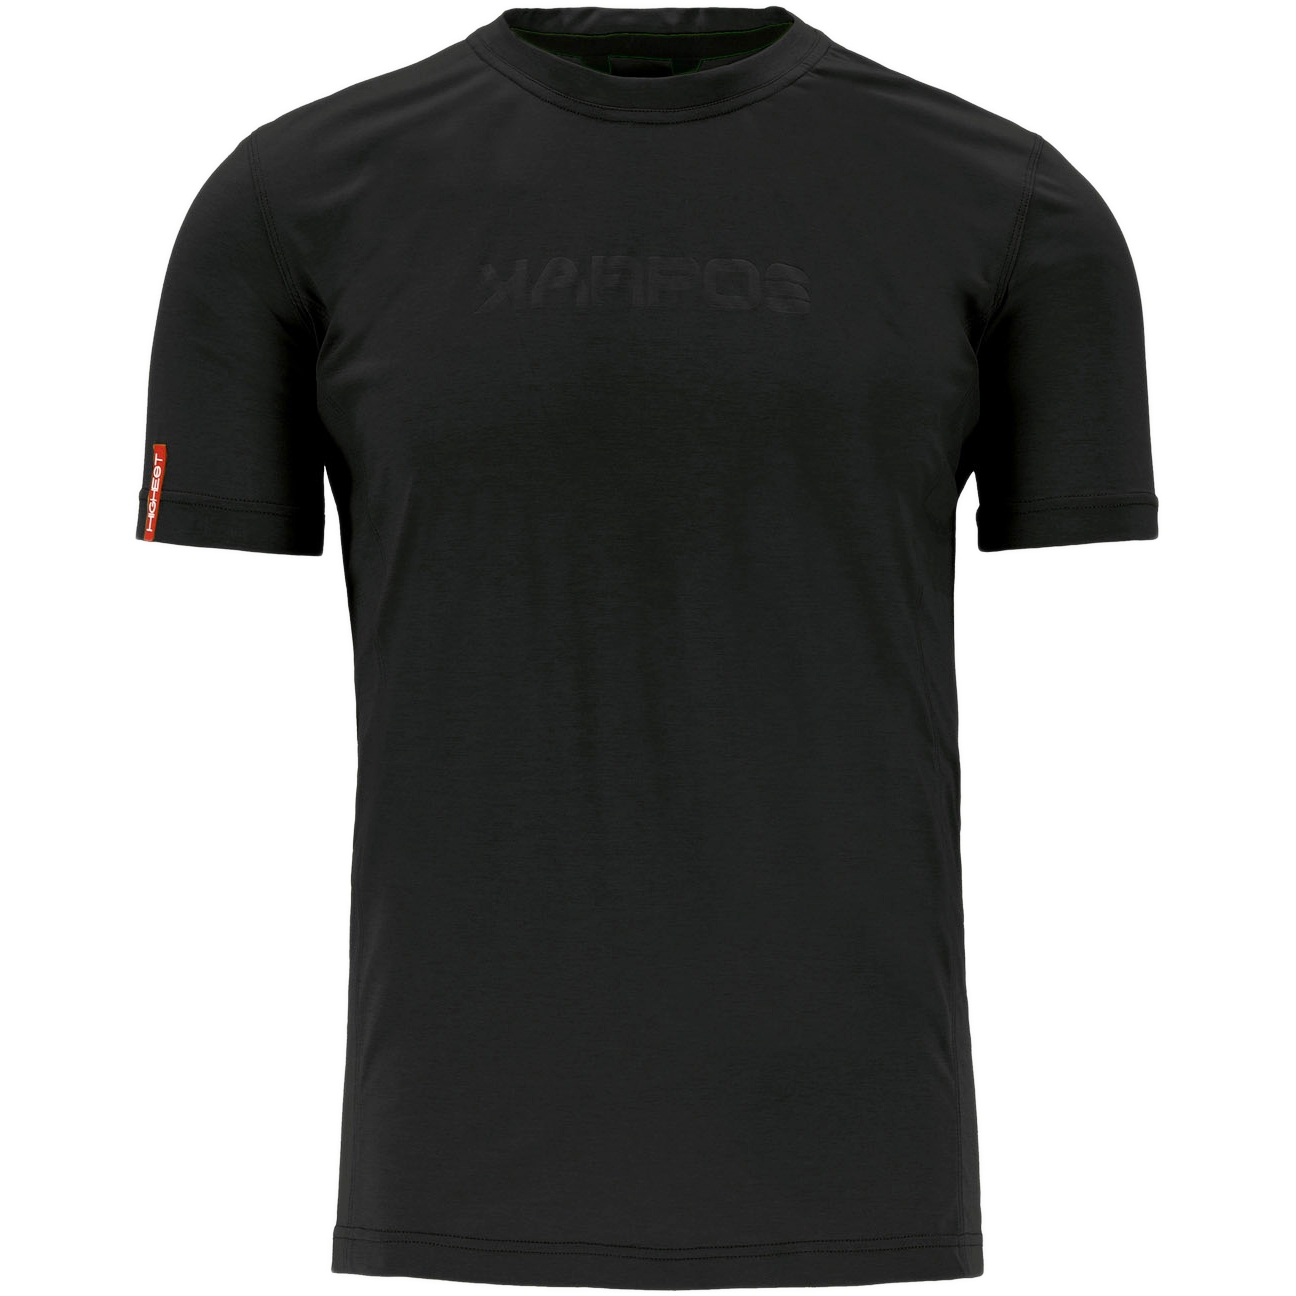 Produktbild von Karpos K-Performance T-Shirt - schwarz